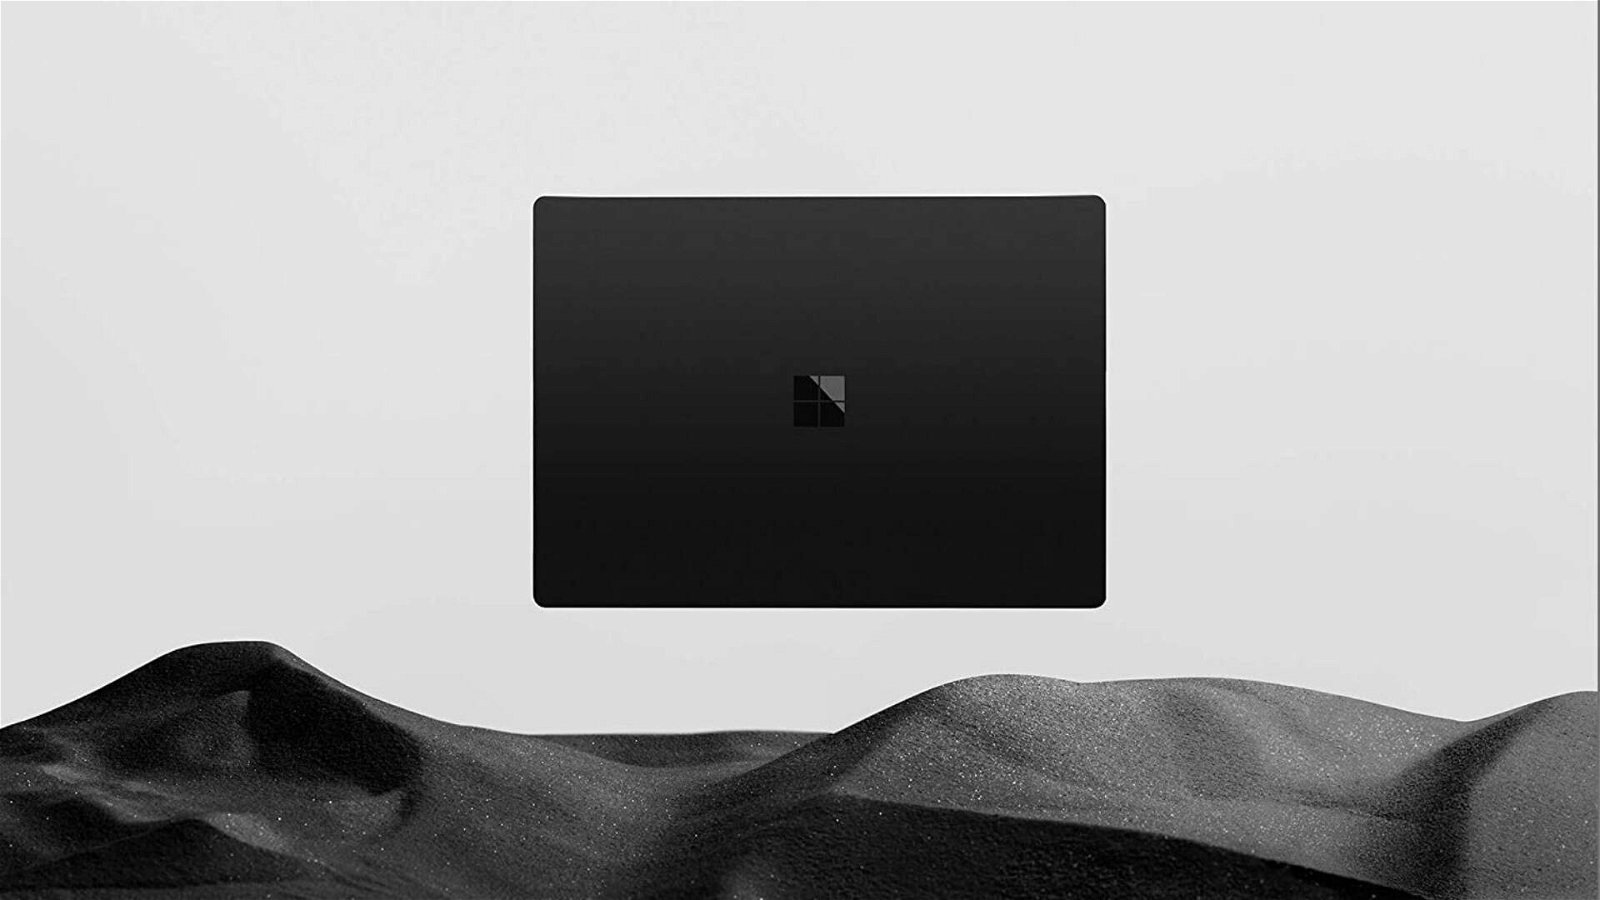 Immagine di Offerte del giorno Amazon: MacBook e Microsoft Surface scontati fino a 500€!